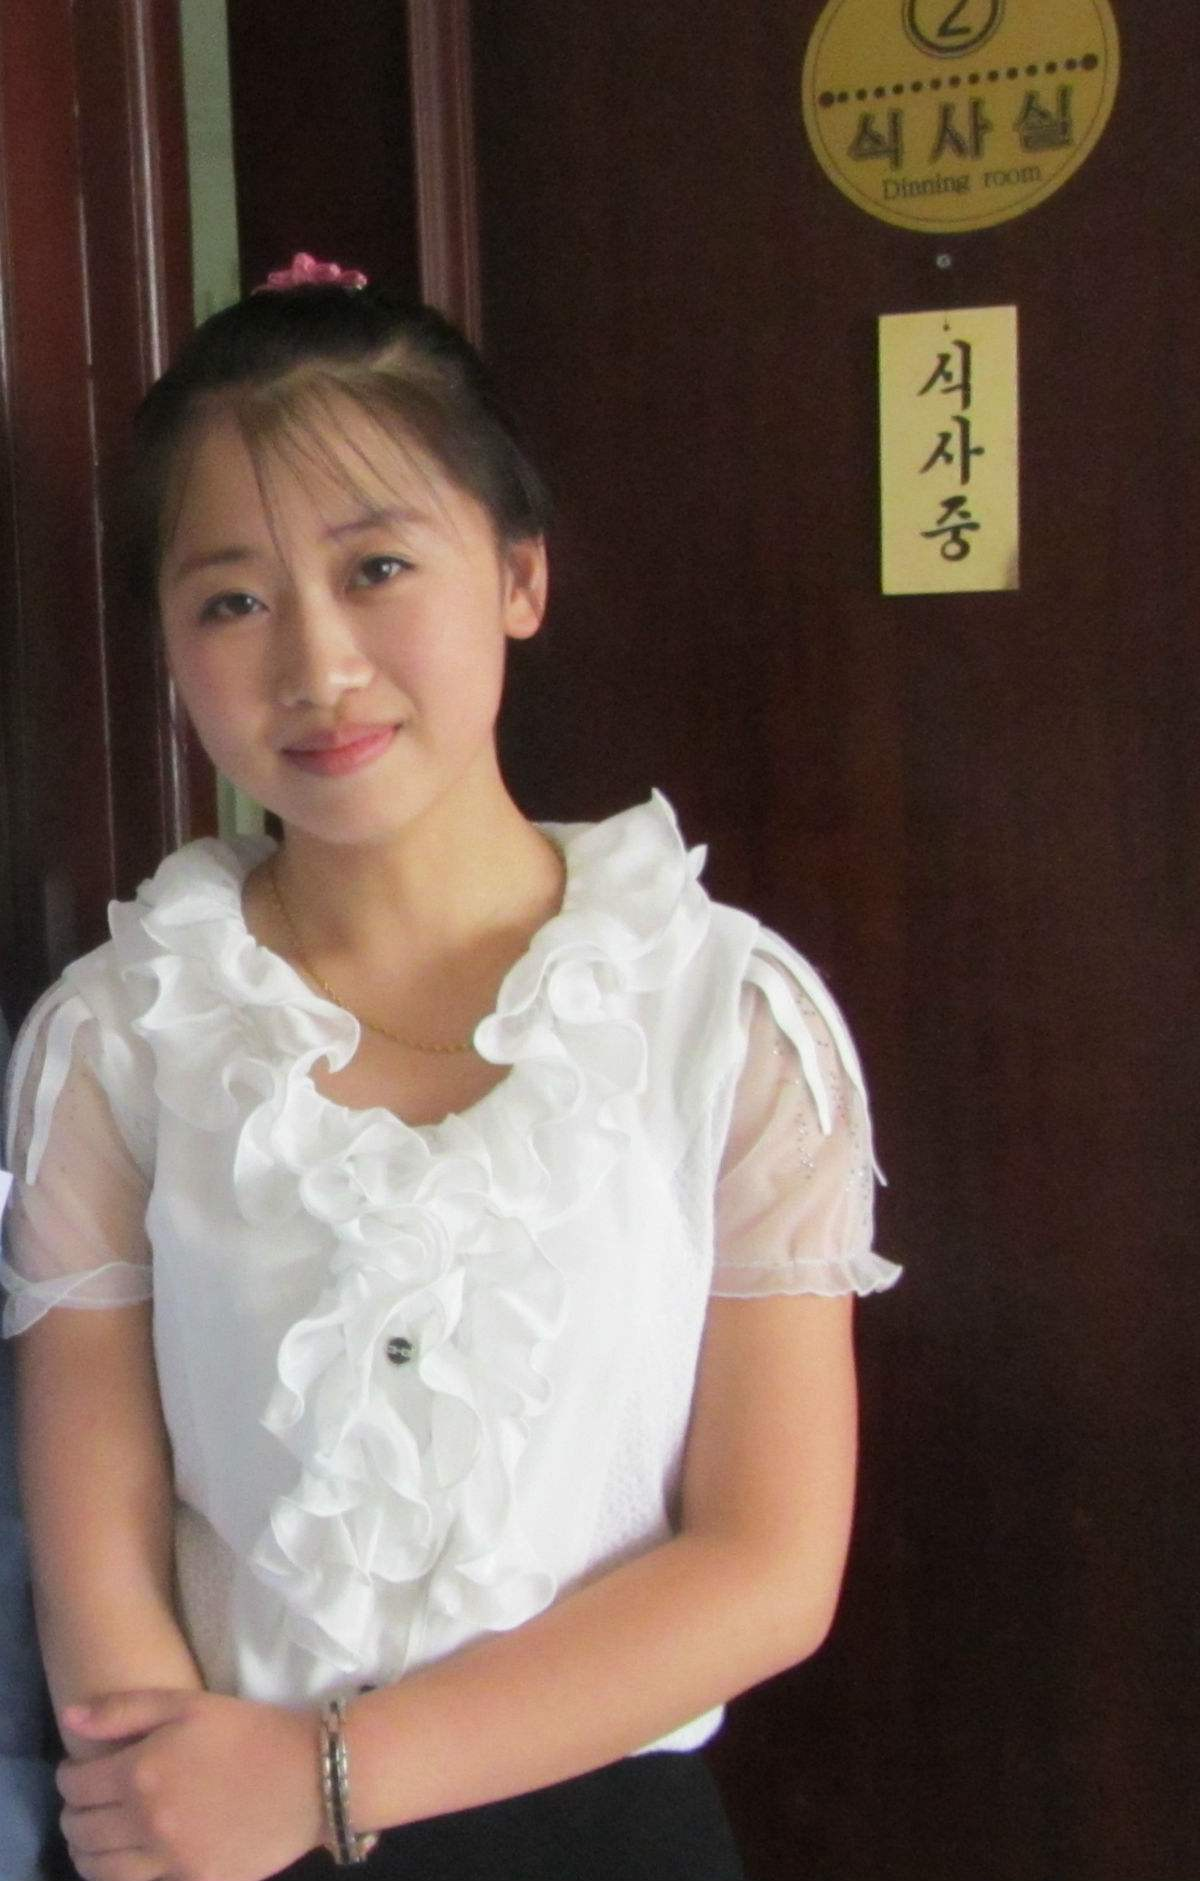 朝鲜女孩长相特征图片